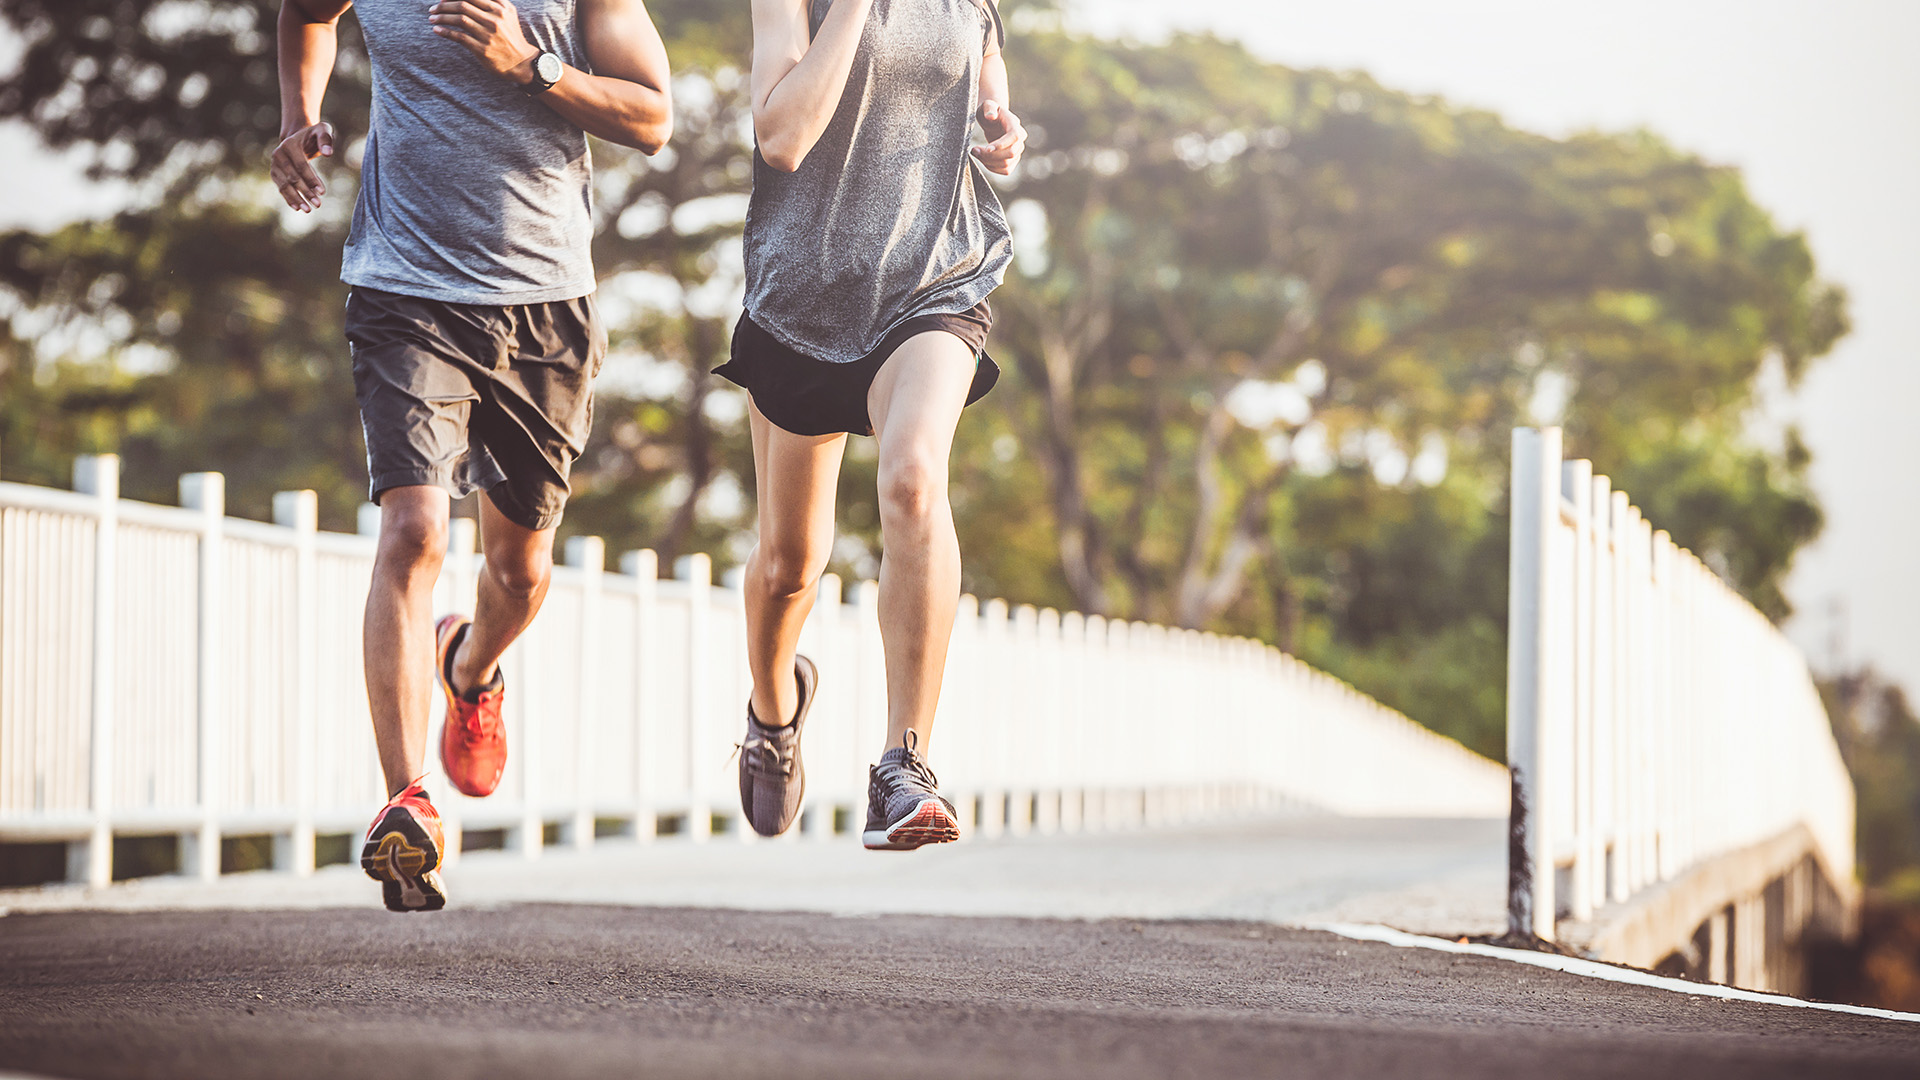 Bác sĩ Nhật Bản tiết lộ: Bài tập hiệu quả hơn việc đi bộ 10 nghìn bước mỗi ngày, giúp hạ huyết áp và giảm cân